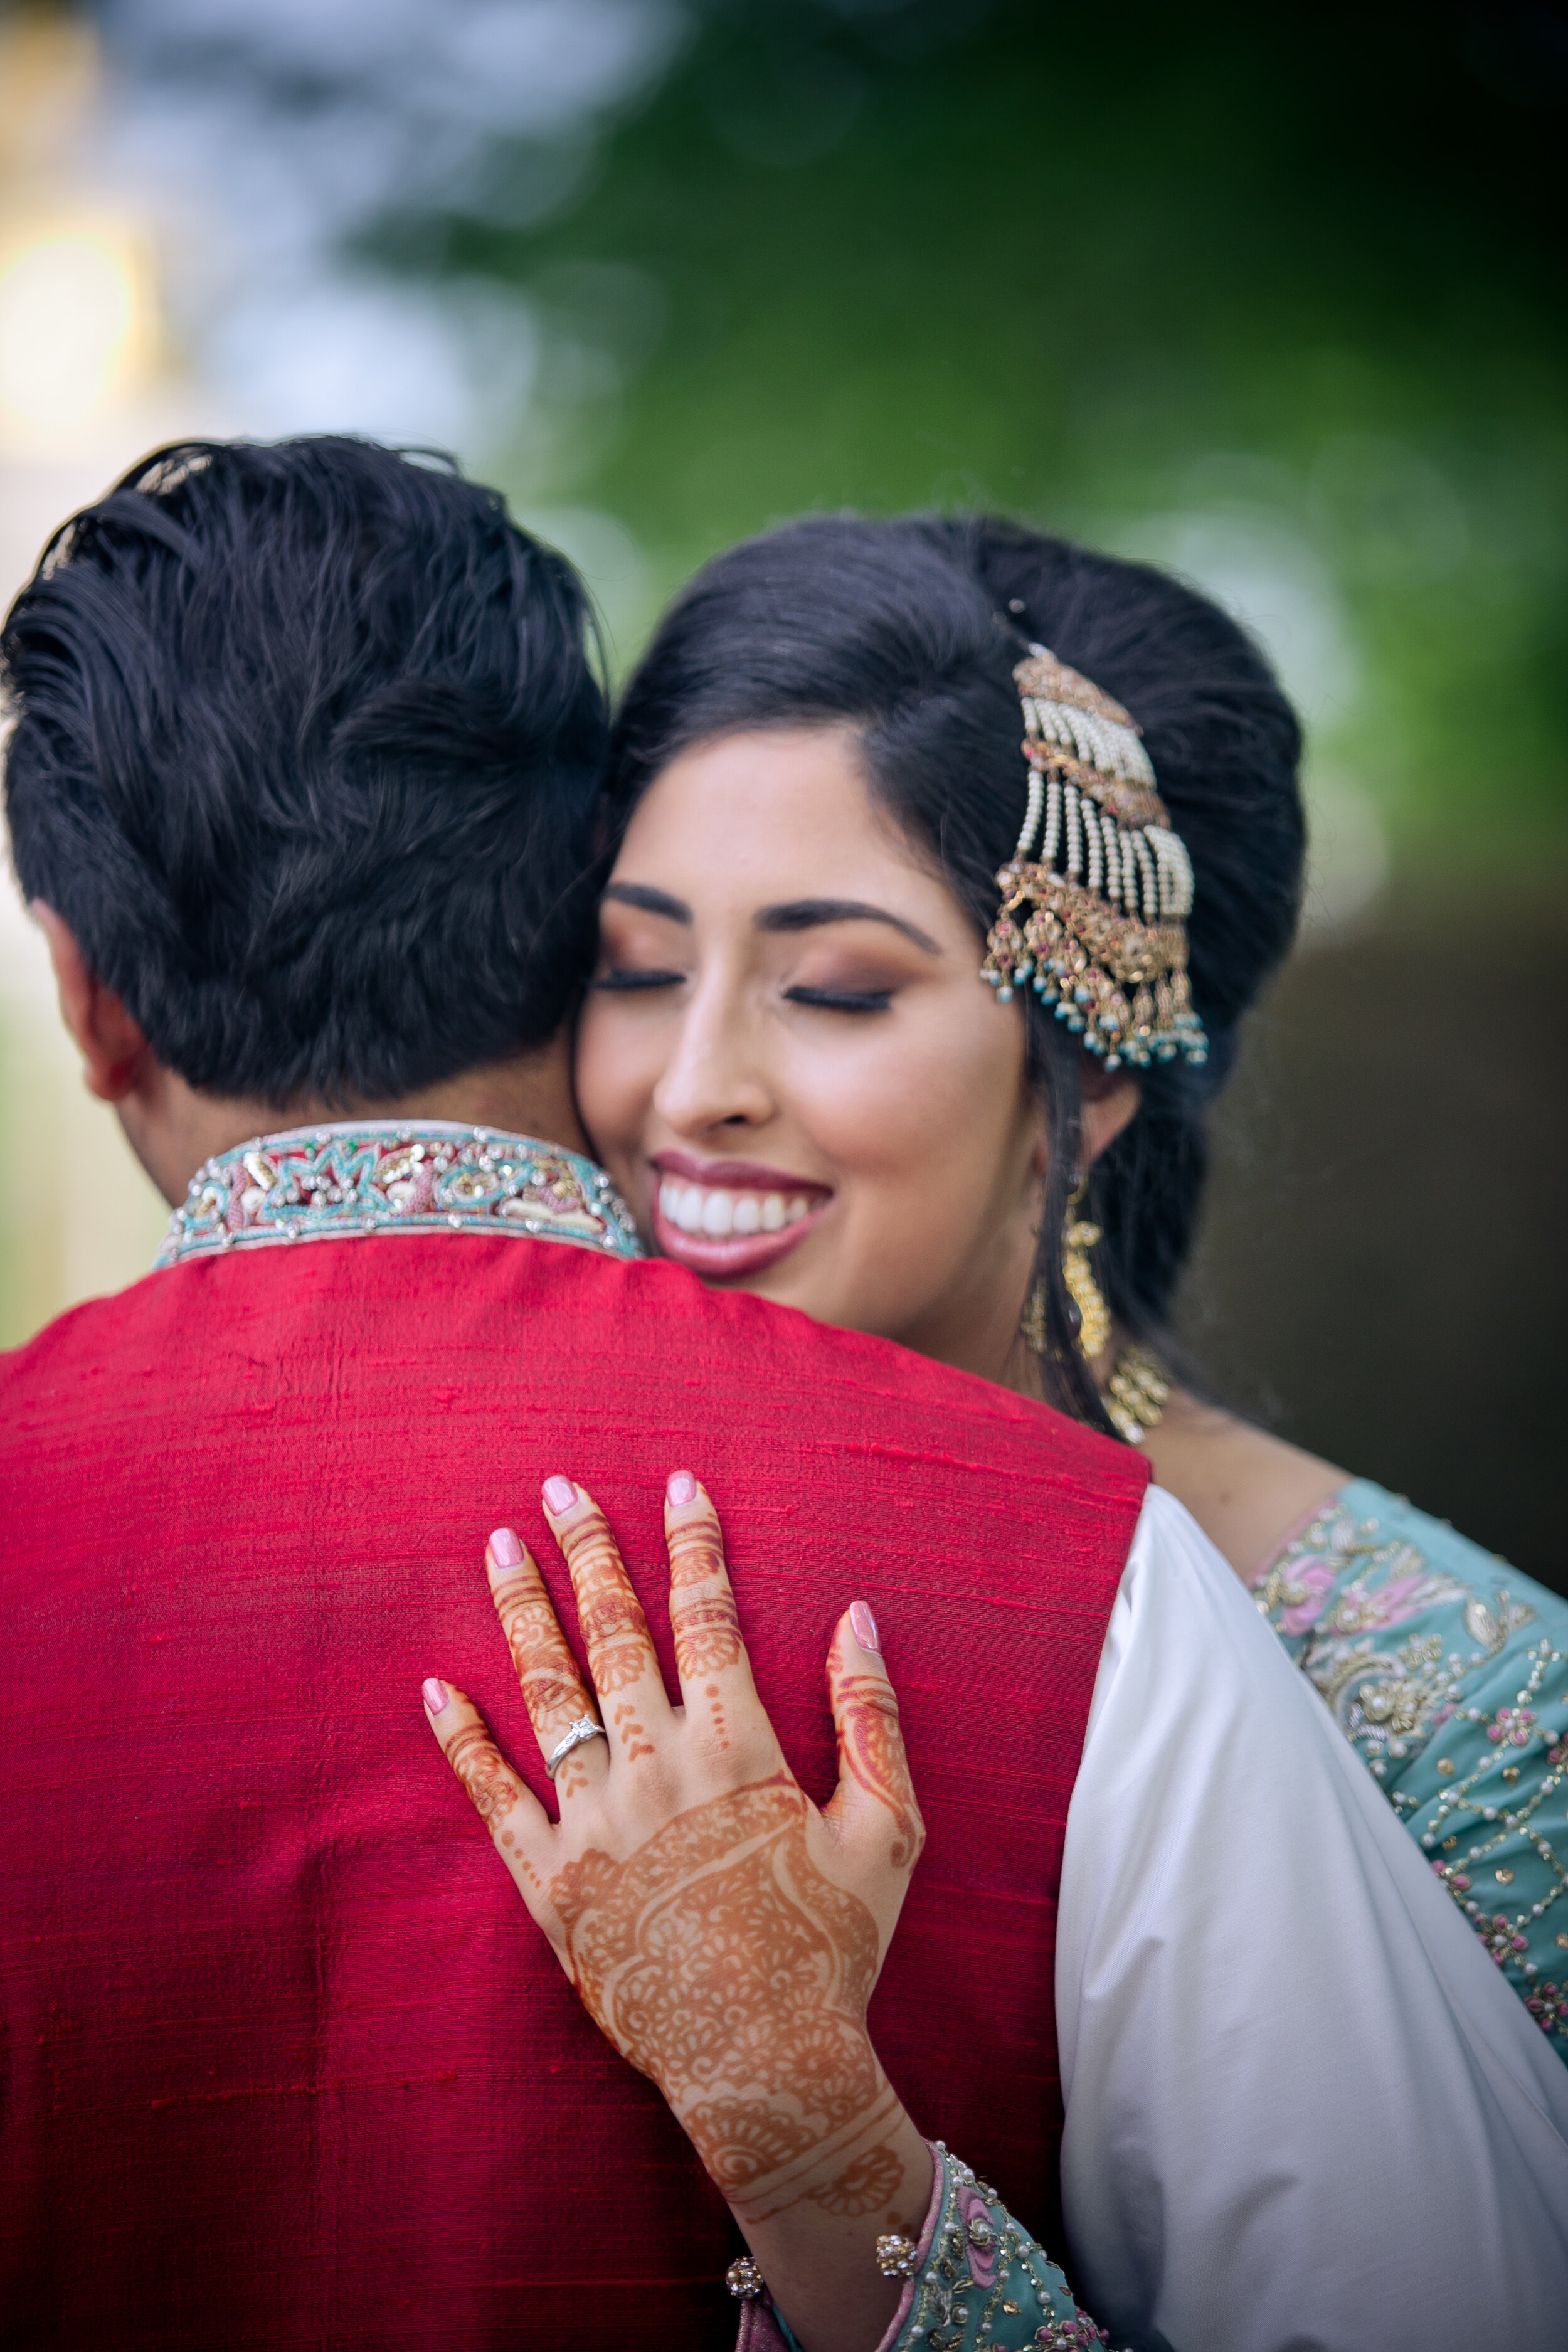 Wedding photography | Indian wedding photography couples, Indian bride photography  poses, Indian wedding photography poses